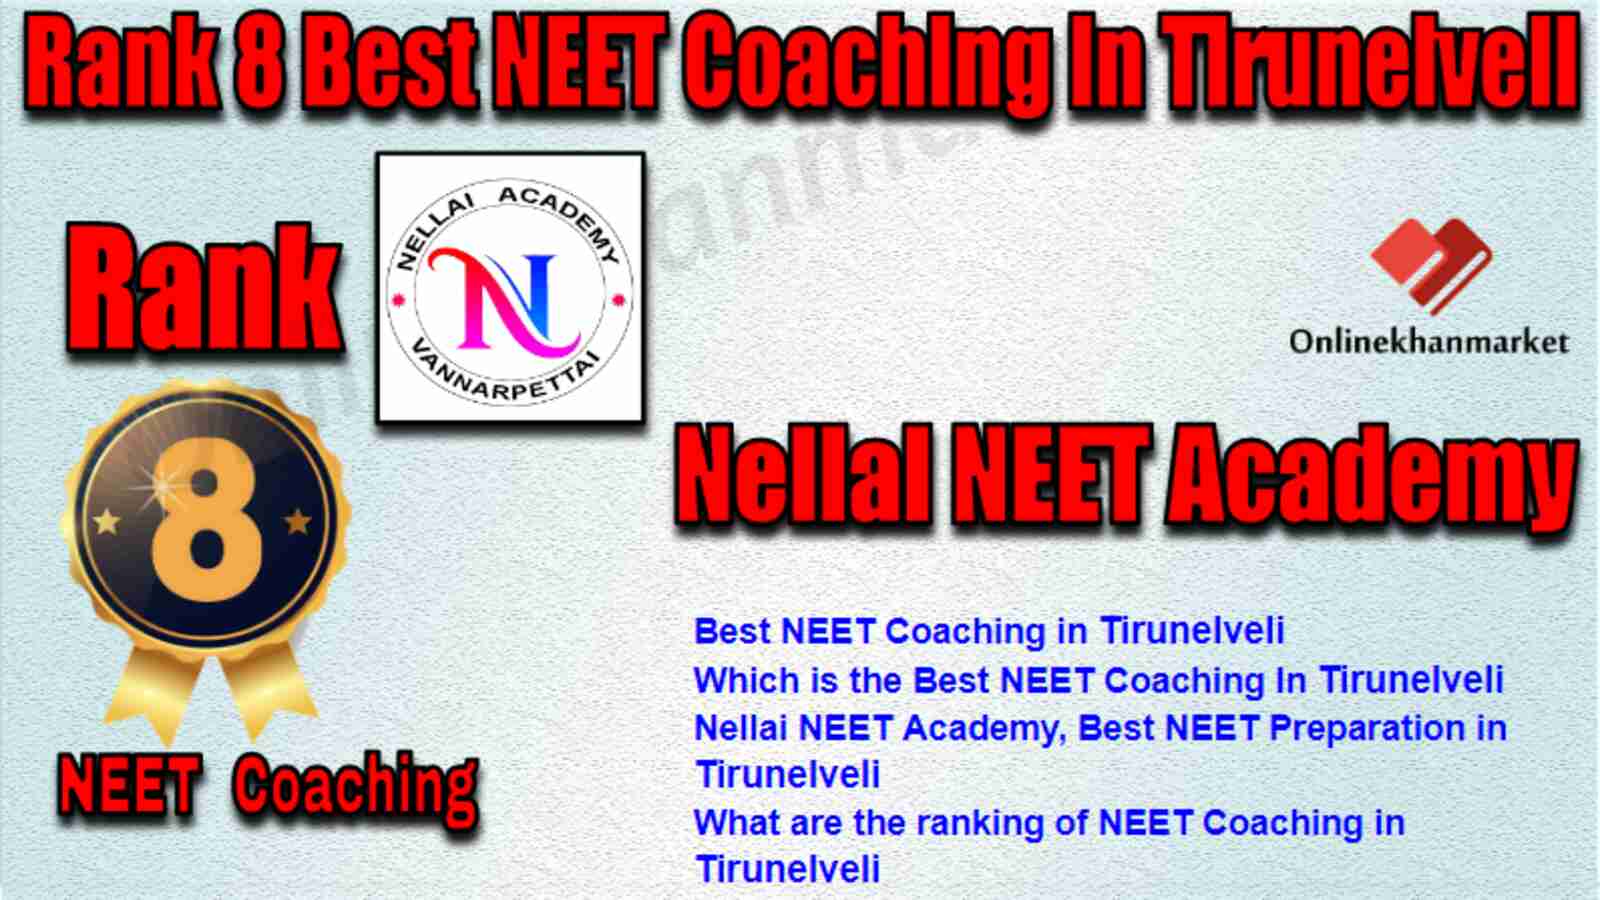 Rank 8 Best NEET Coaching in Tirunelveli